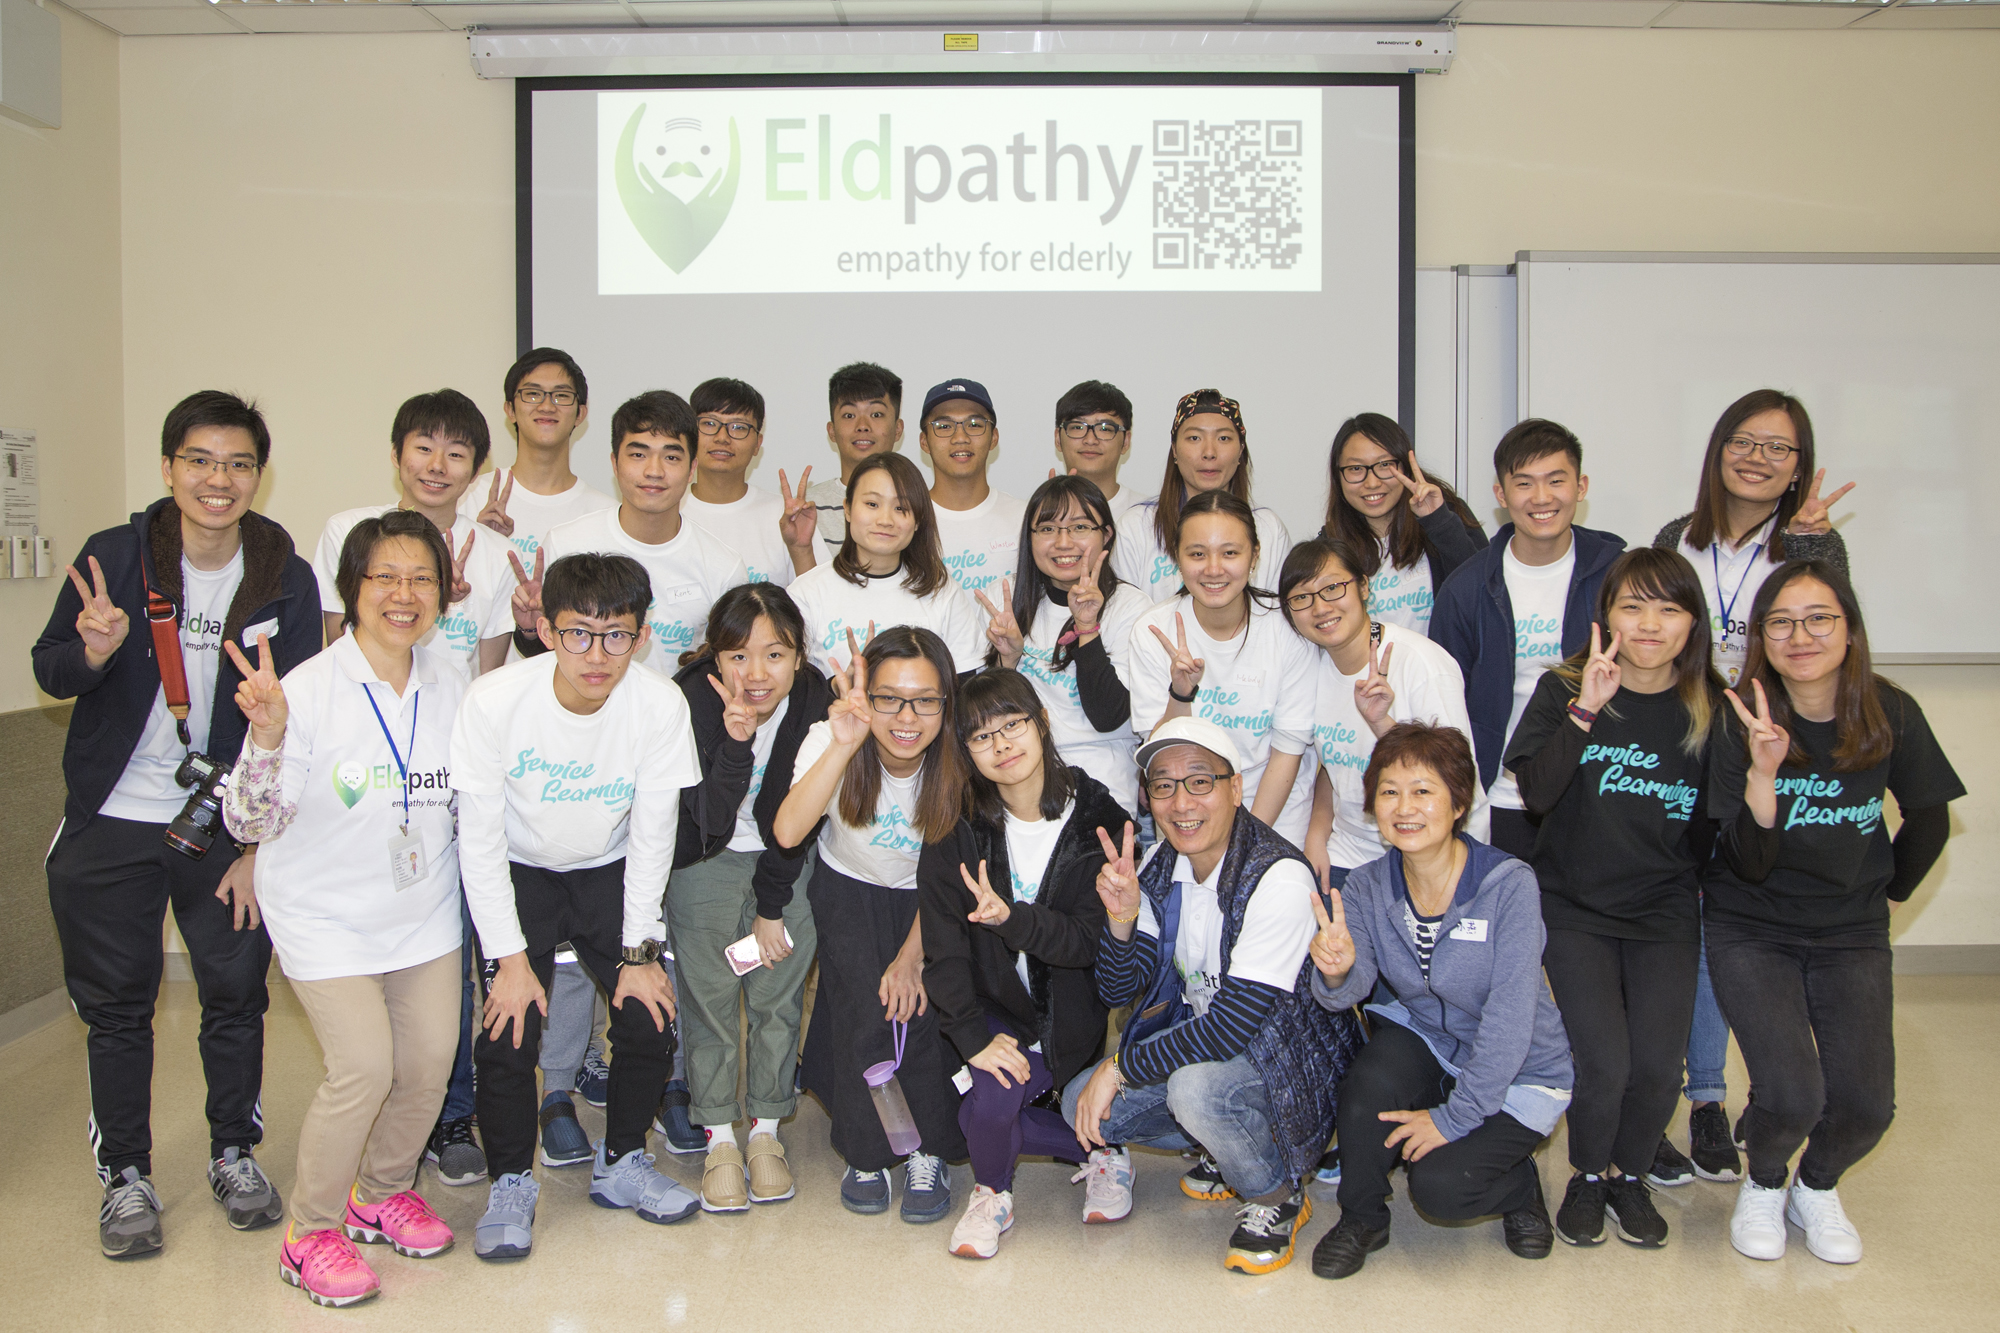 Eldpathy鼓勵同學身體力行參加不同種類的長者活動，了解長者的需要，從而學習互相溝通和尊重。